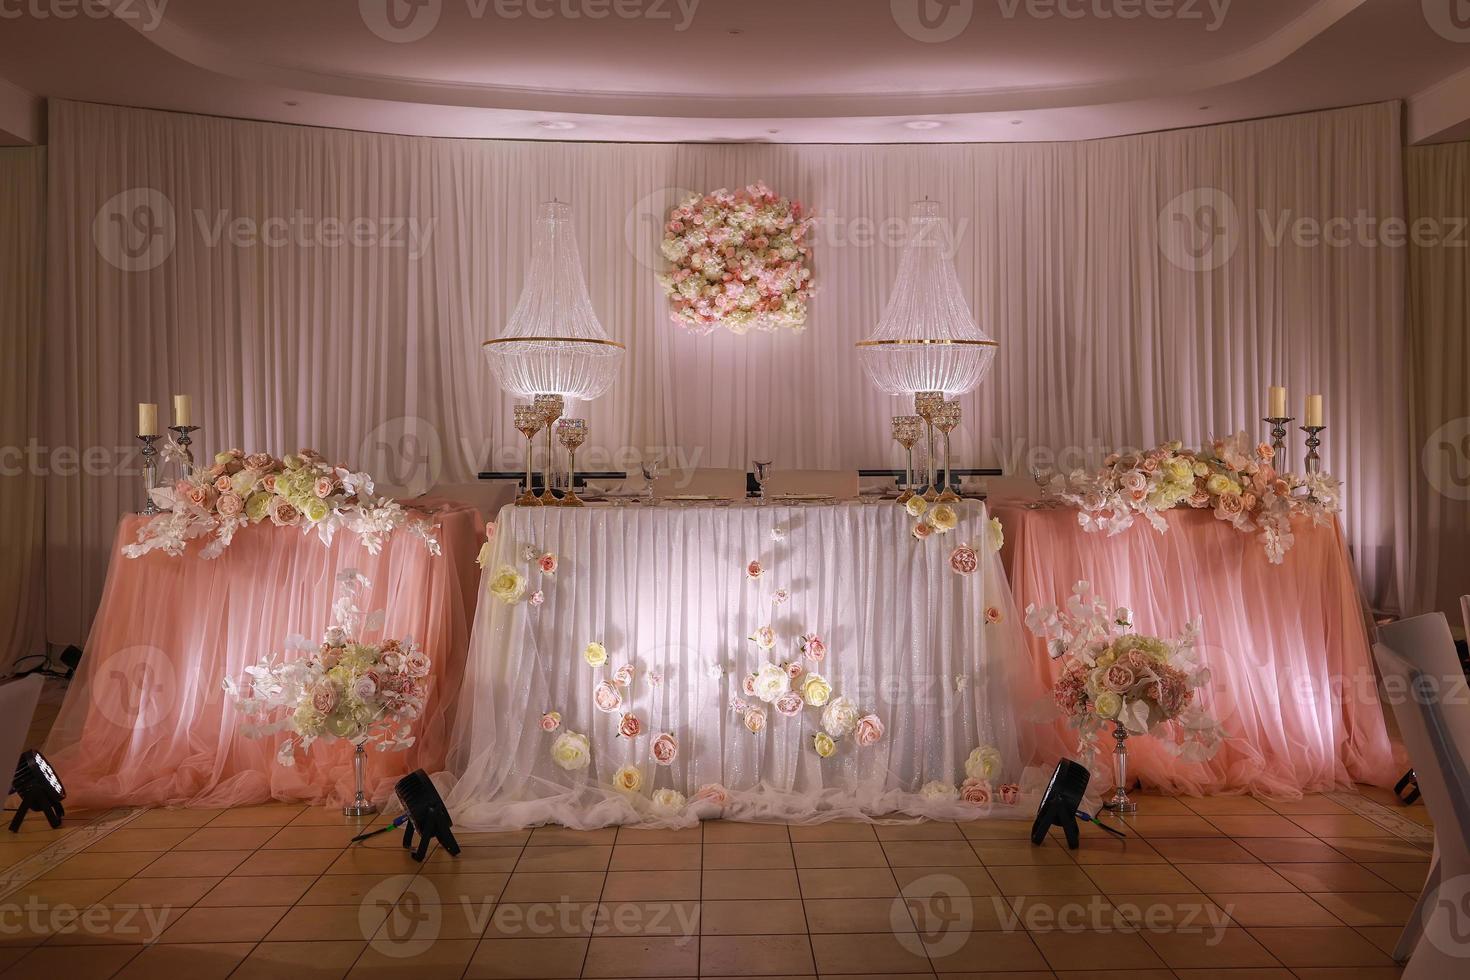 decoración festiva de la mesa de bodas con candelabros de cristal, candelabros dorados, velas y flores rosas blancas. día de la boda con estilo foto